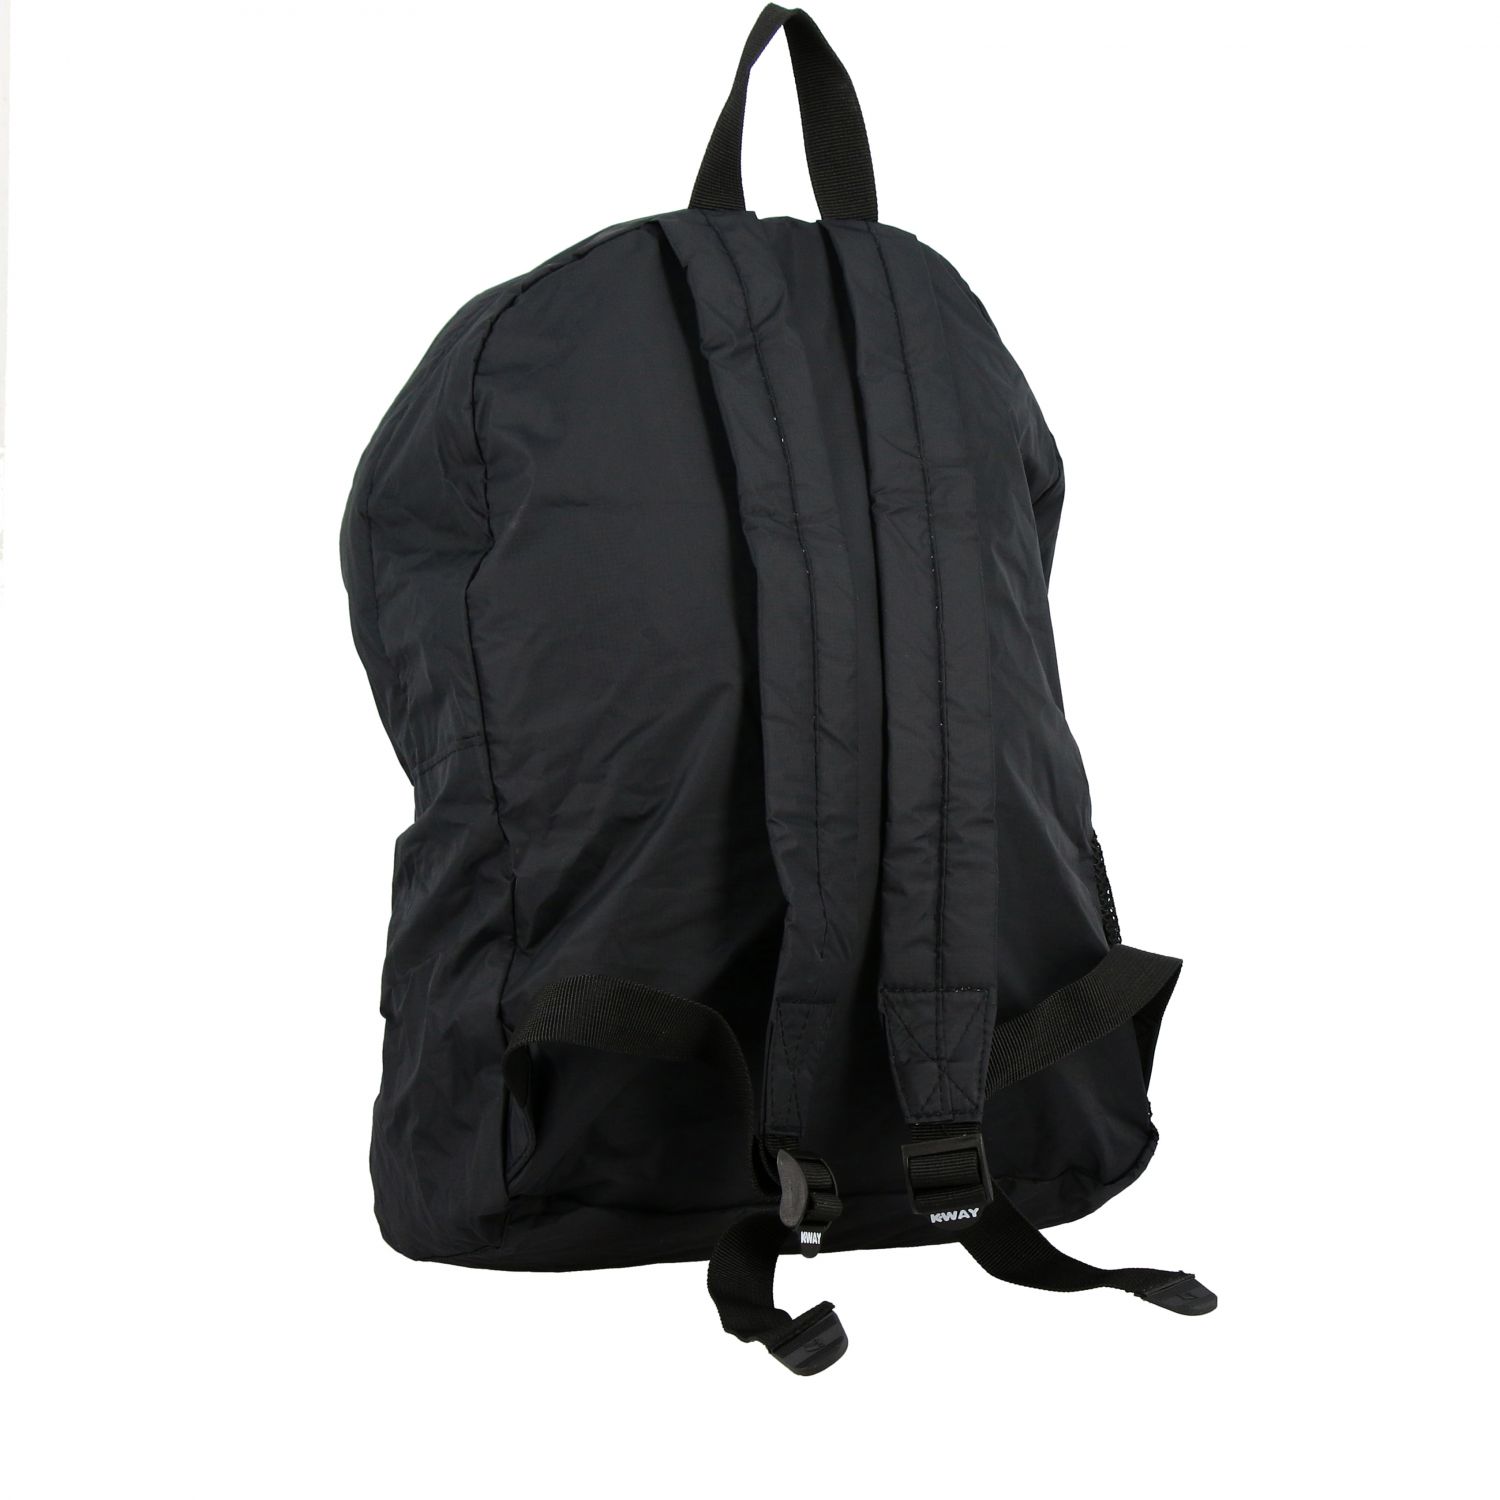 K-Way Outlet: travel bag for man - Black | K-Way travel bag K006X60 ...